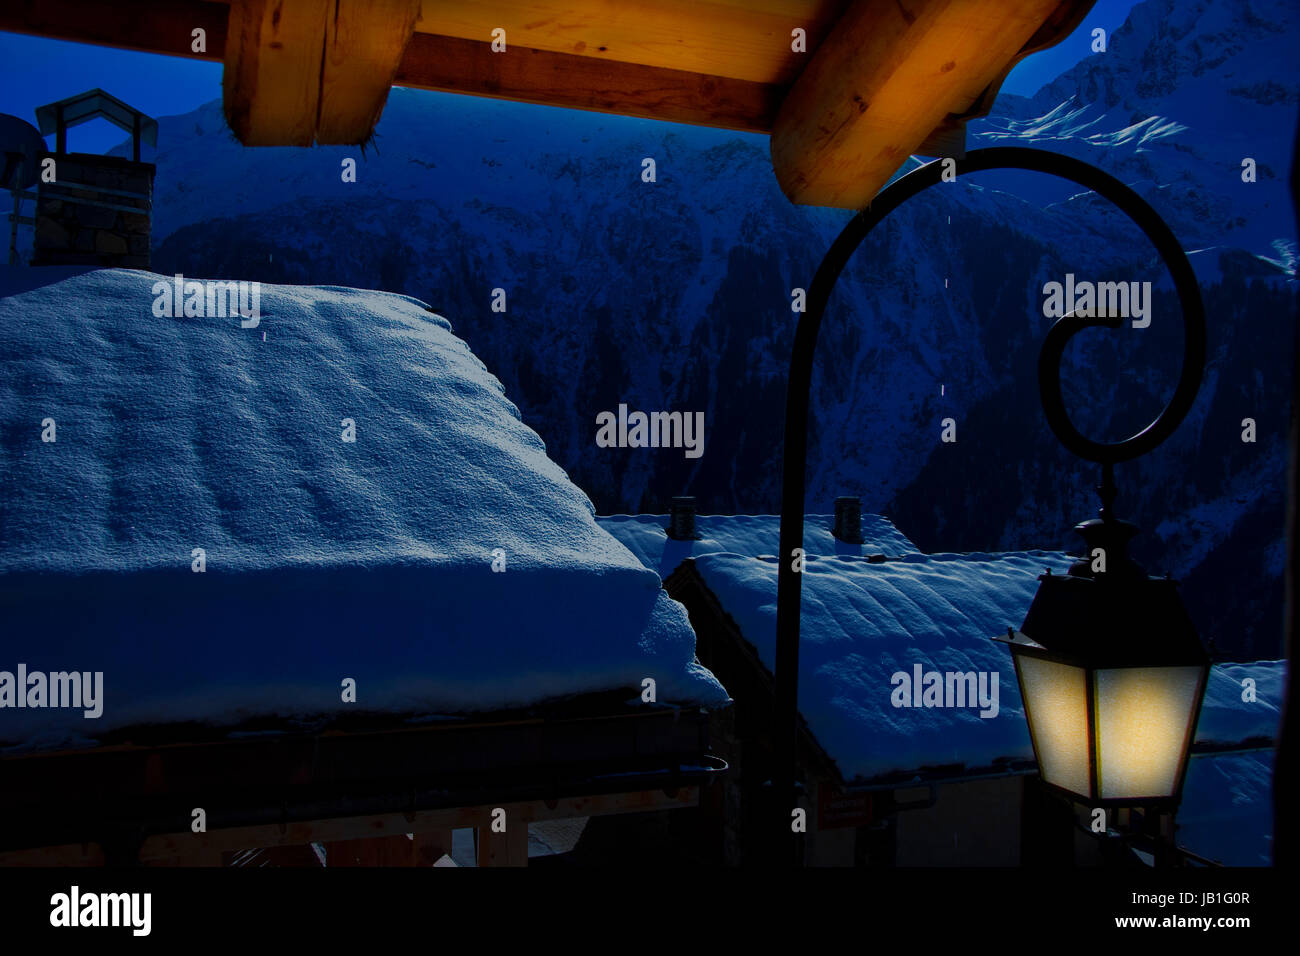 Schneebedeckte Skihütten am späten Abend in einer Szene von Wäldern und Bergen, Sainte-Foy-Skigebiet, nördliche Alpen, Frankreich Stockfoto